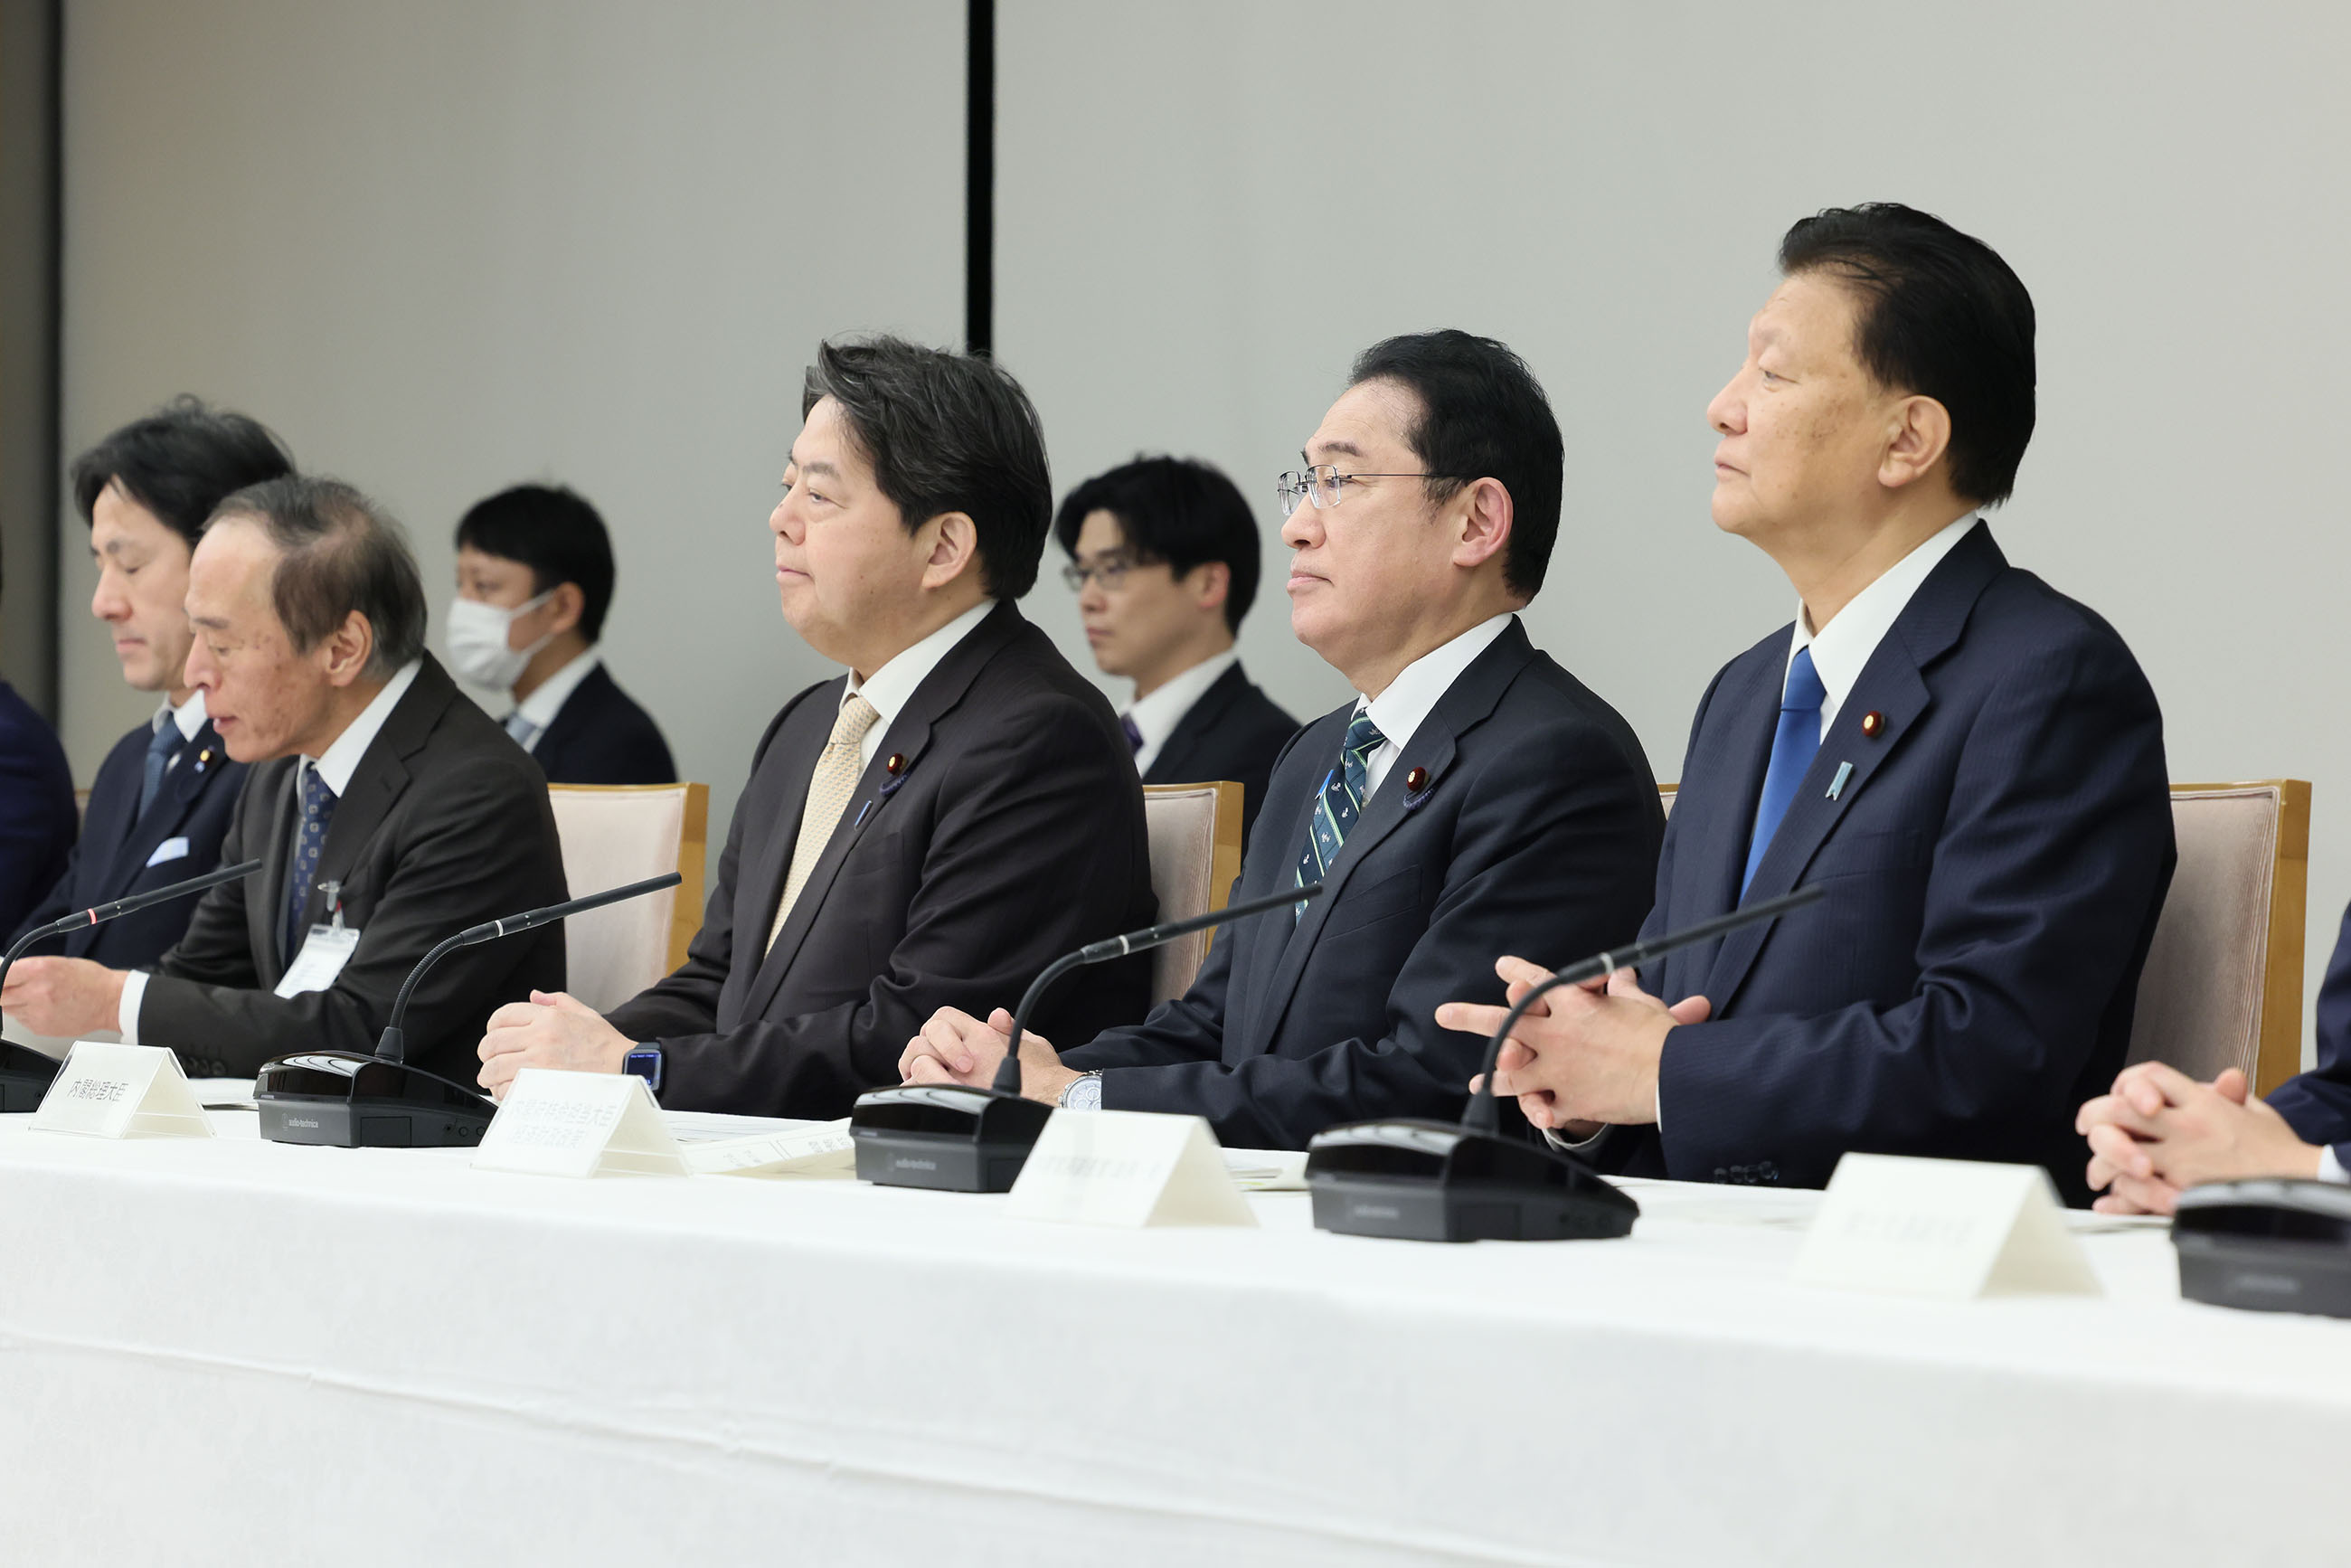 Prime Minister Kishida attending a meeting (1)